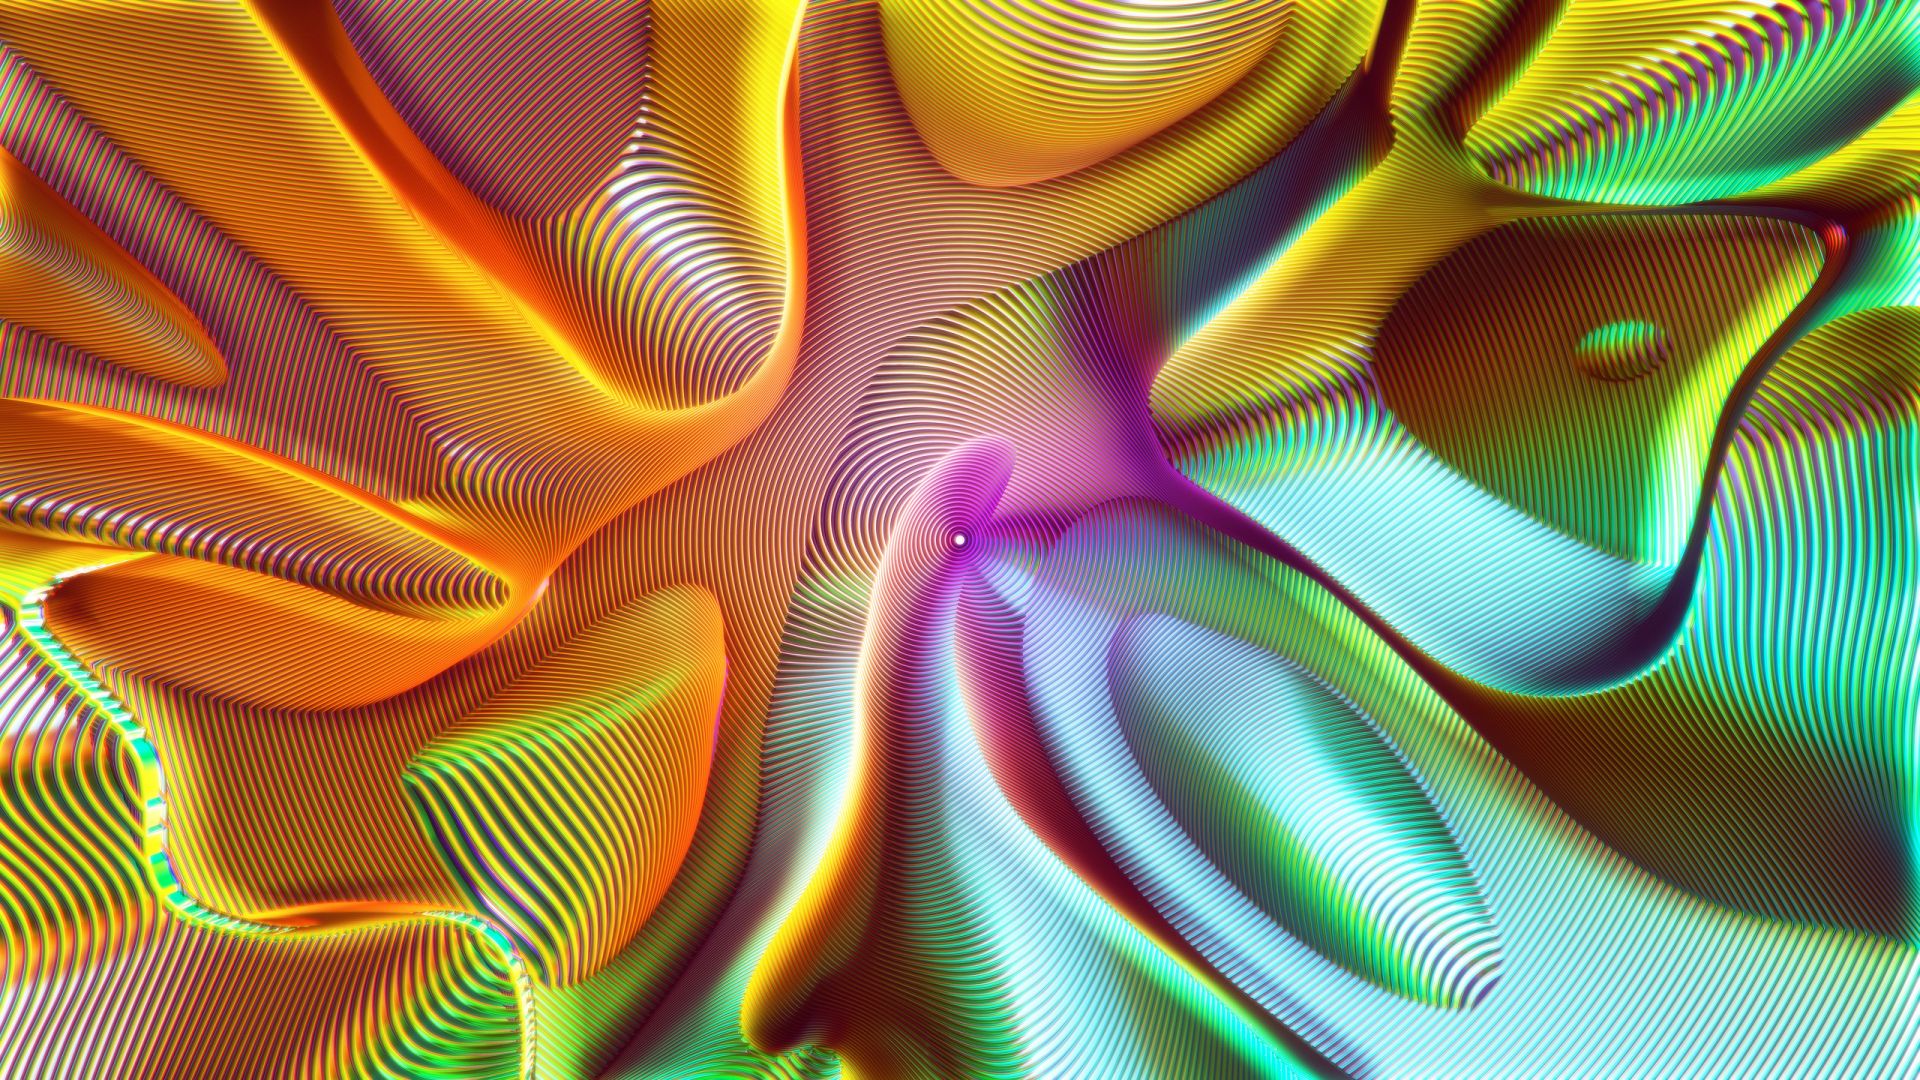 чревоточина, HD, abstract, Wormhole, spiral (horizontal)